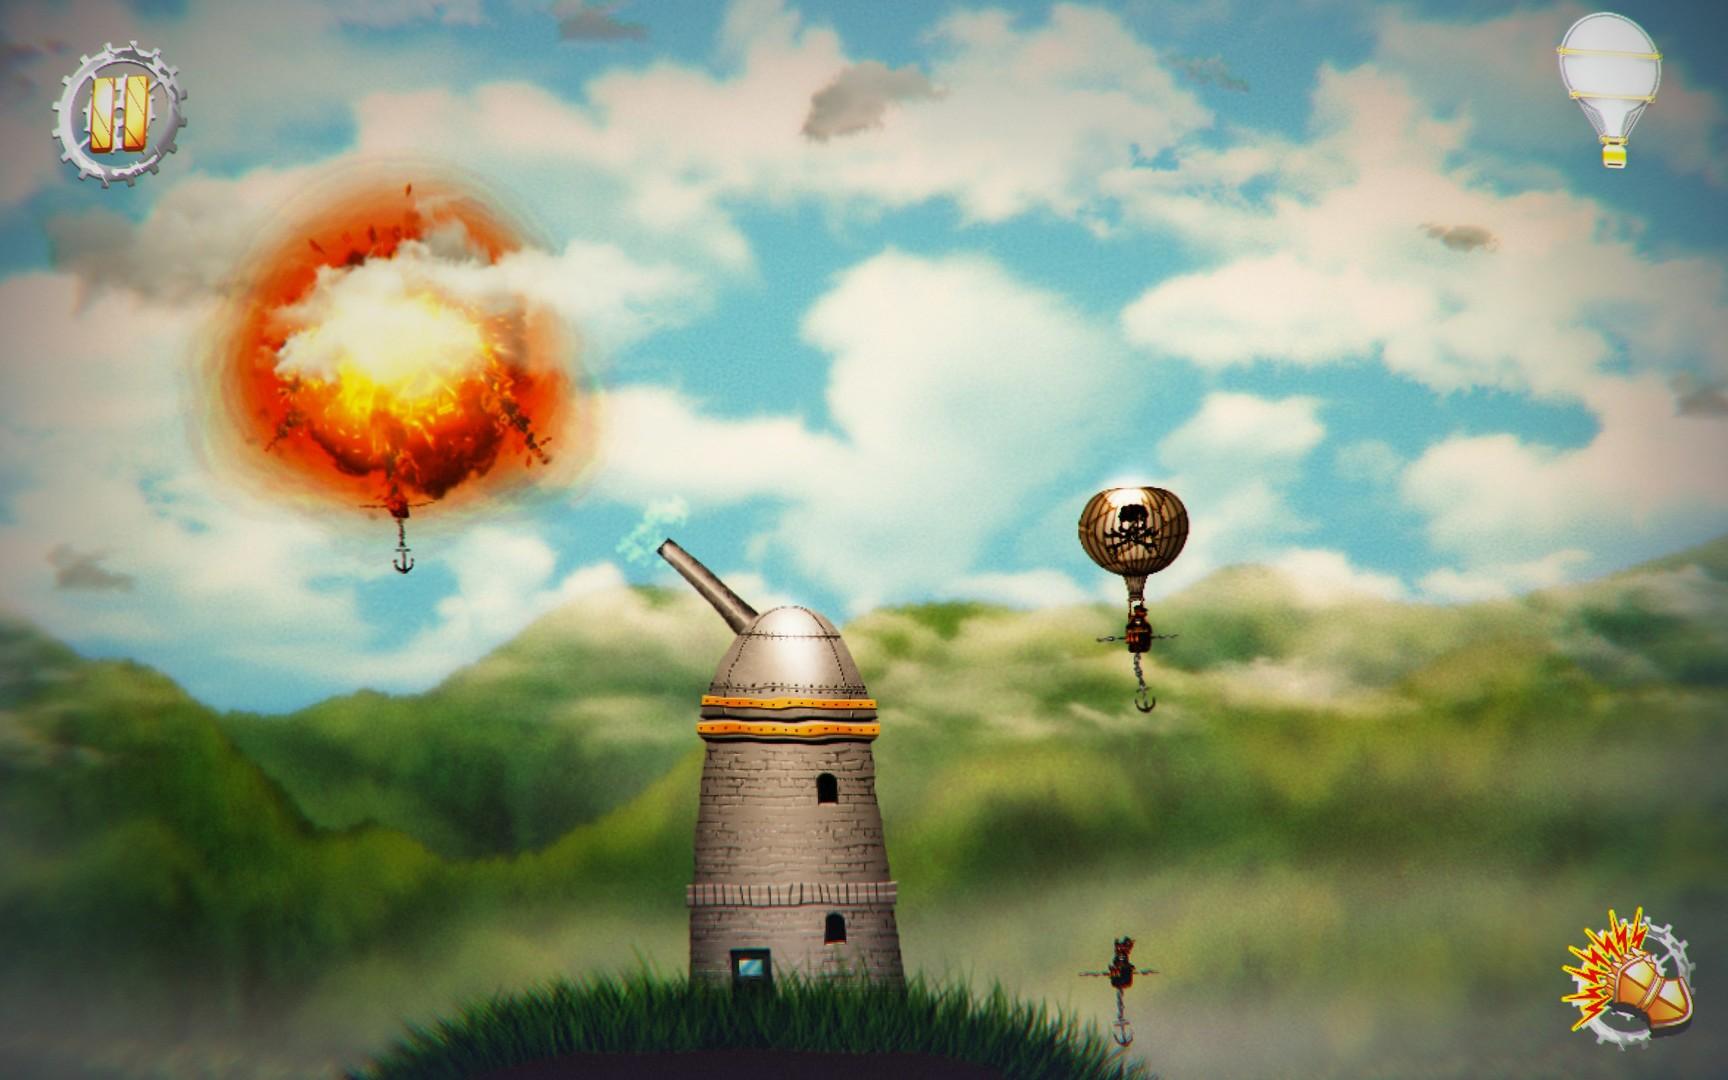 Screenshot №6 from game Pilam Sky